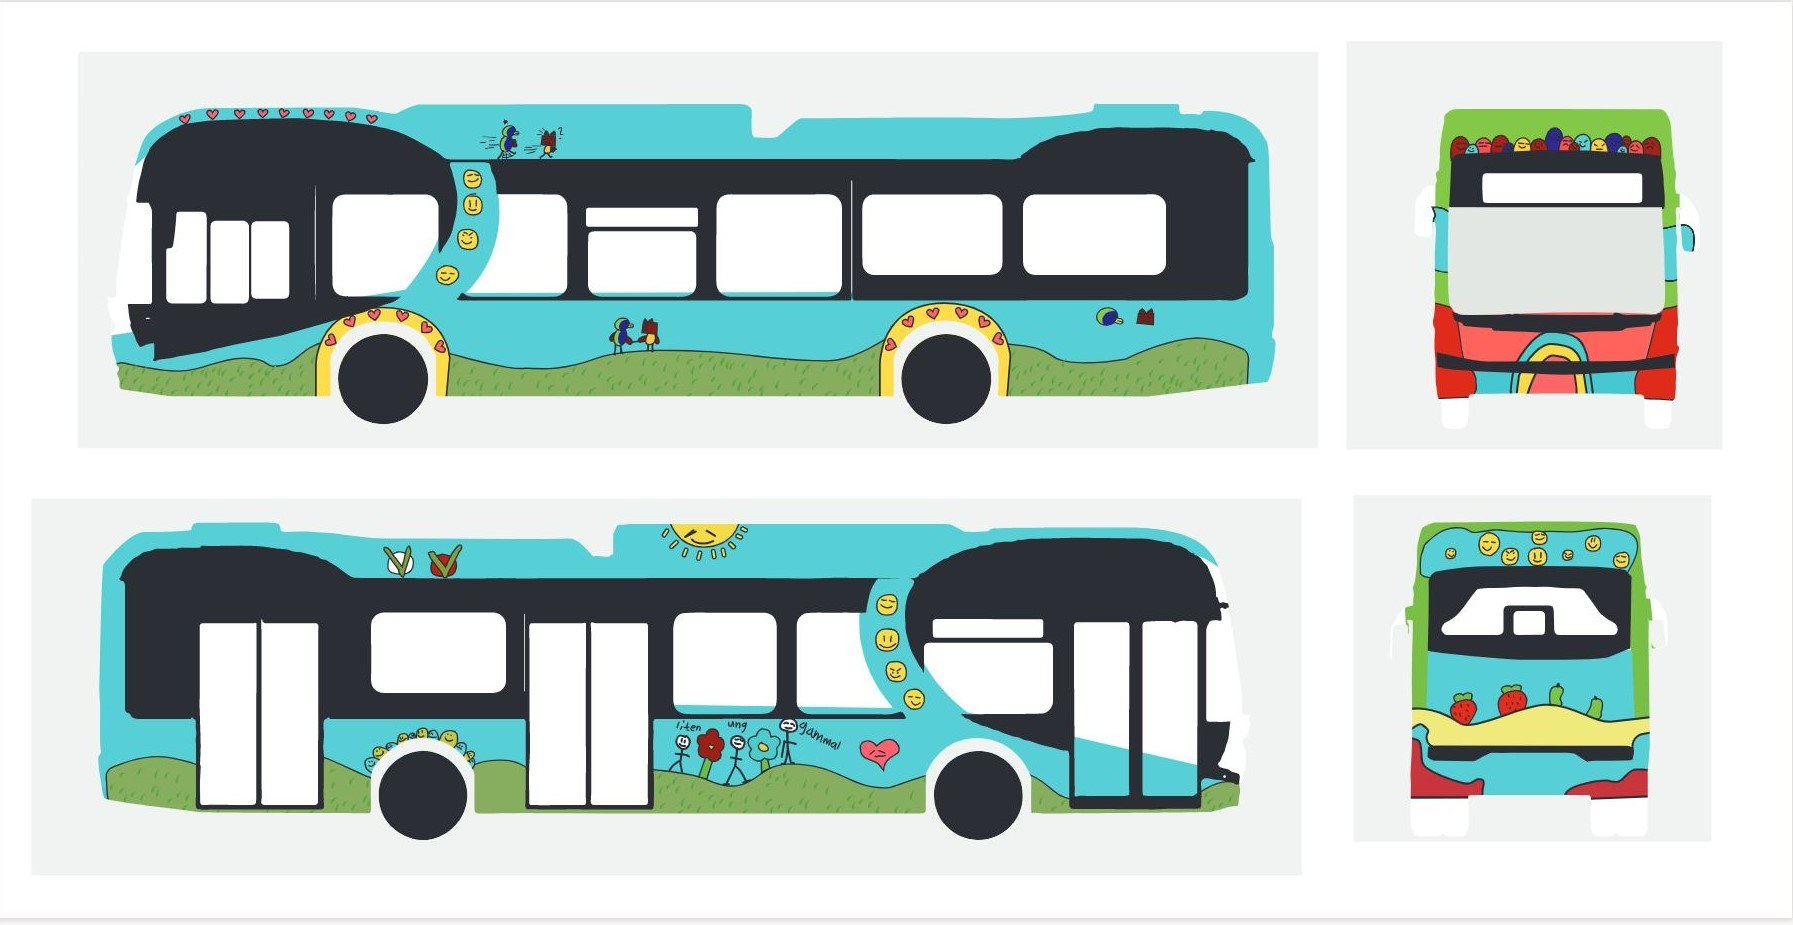 Den färgglada vinnande bussen i designtävlingen som skolelever i Nyköping tagit fram.  